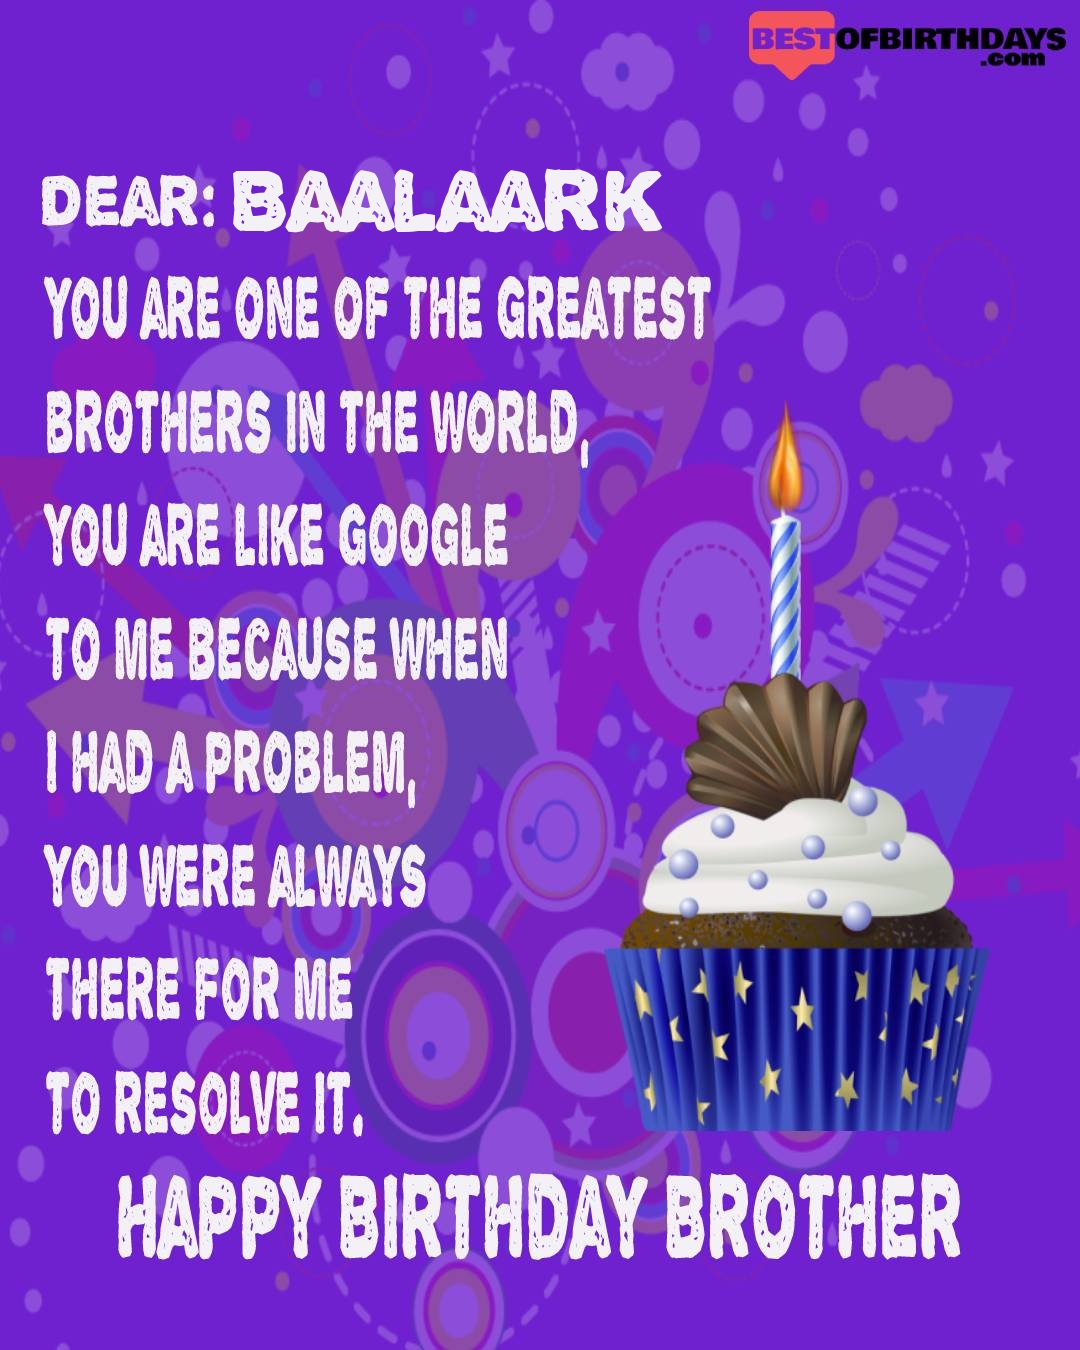 Happy birthday baalaark bhai brother bro